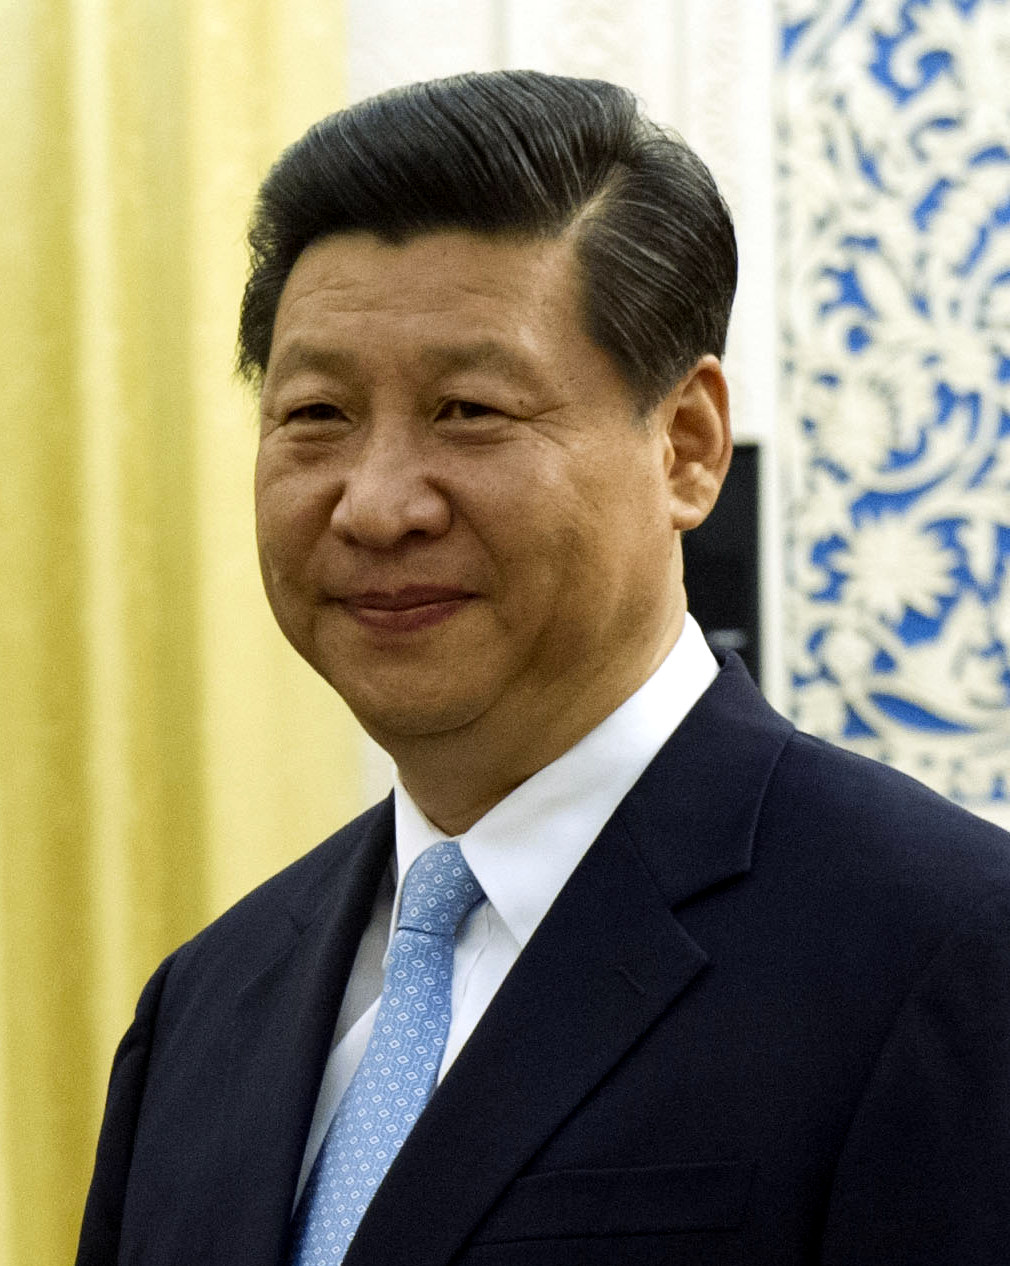 Datei:Xi Jinping-2012.jpg